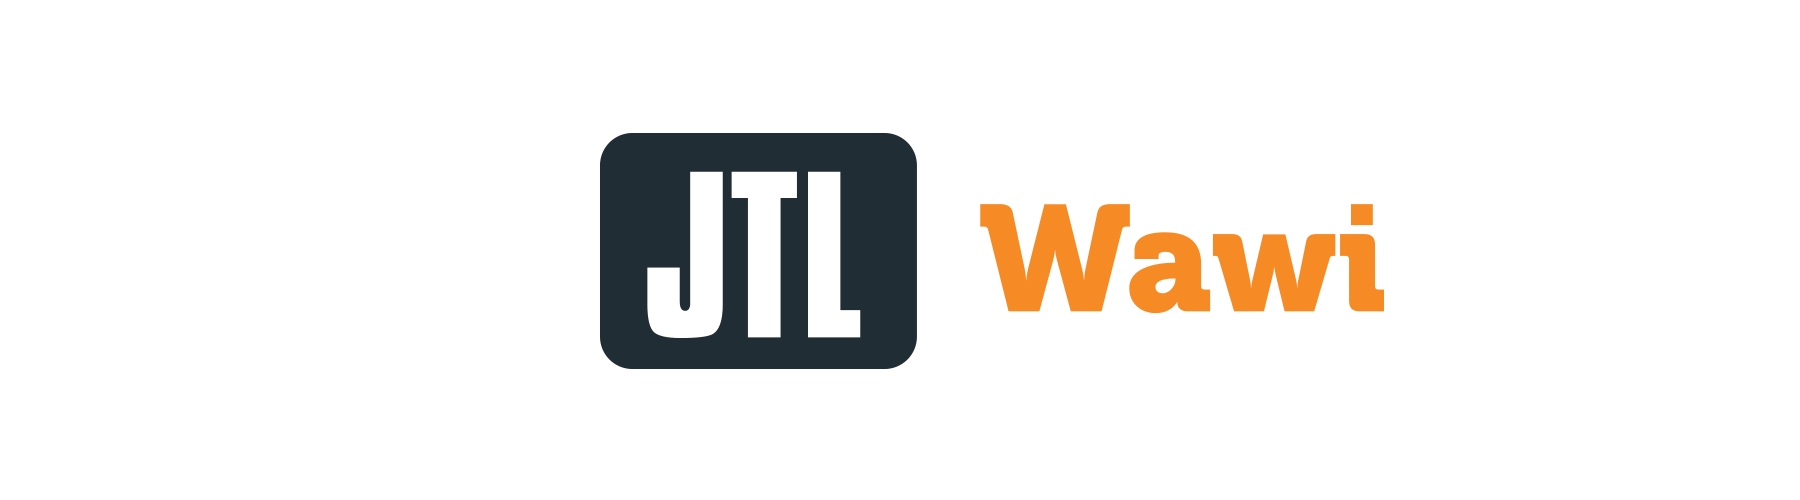 JTL-Wawi Tutorial